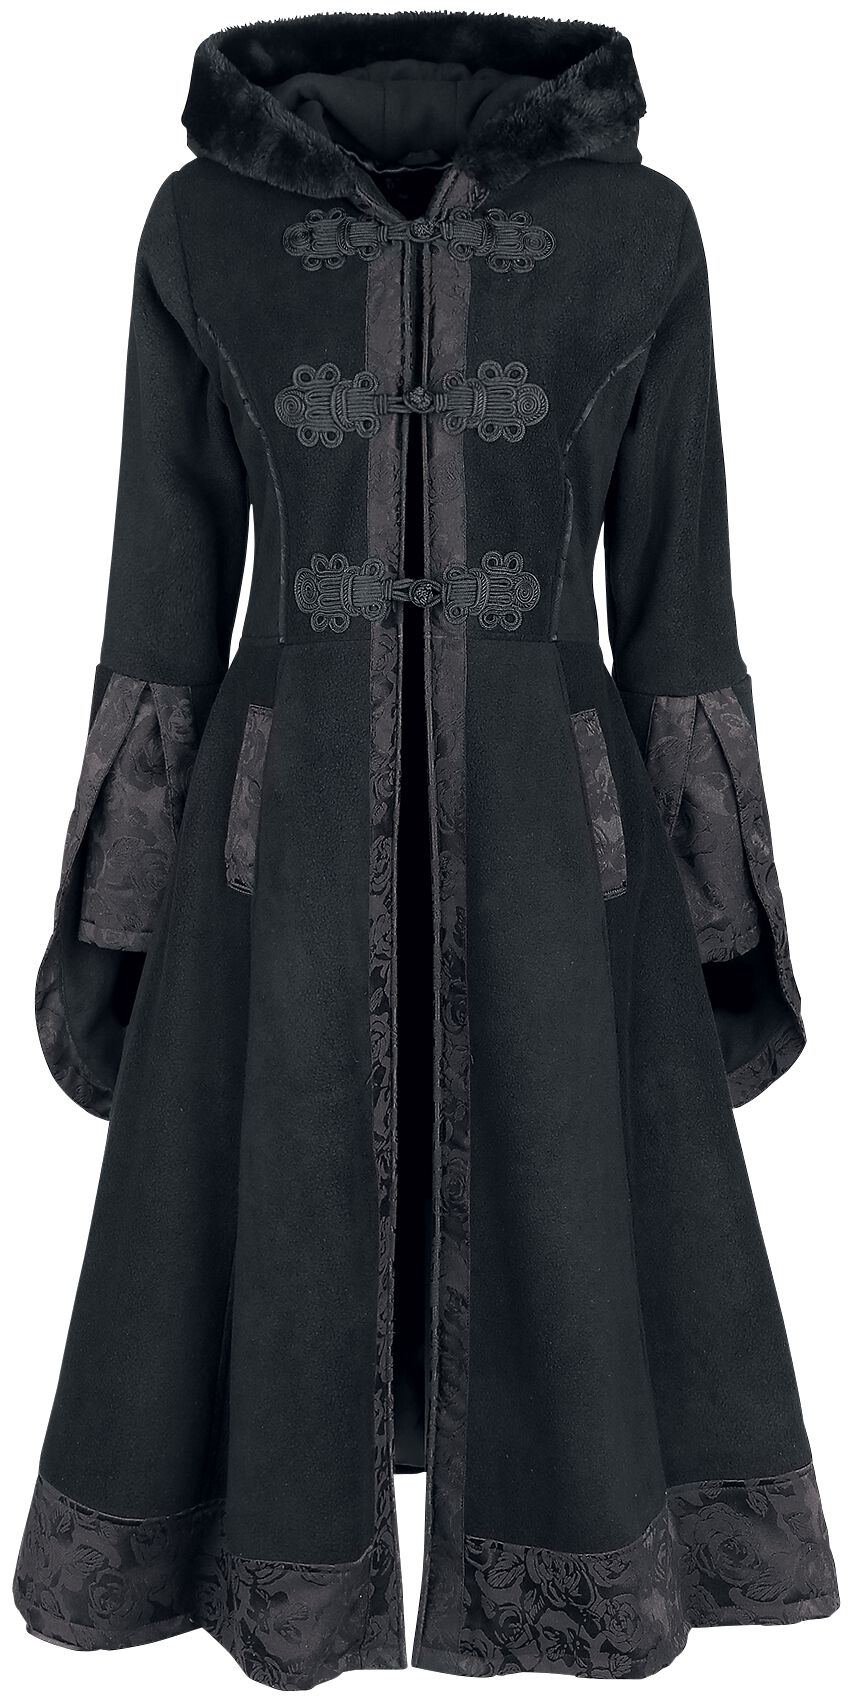 Luella Coat Mantel schwarz von Poizen Industries